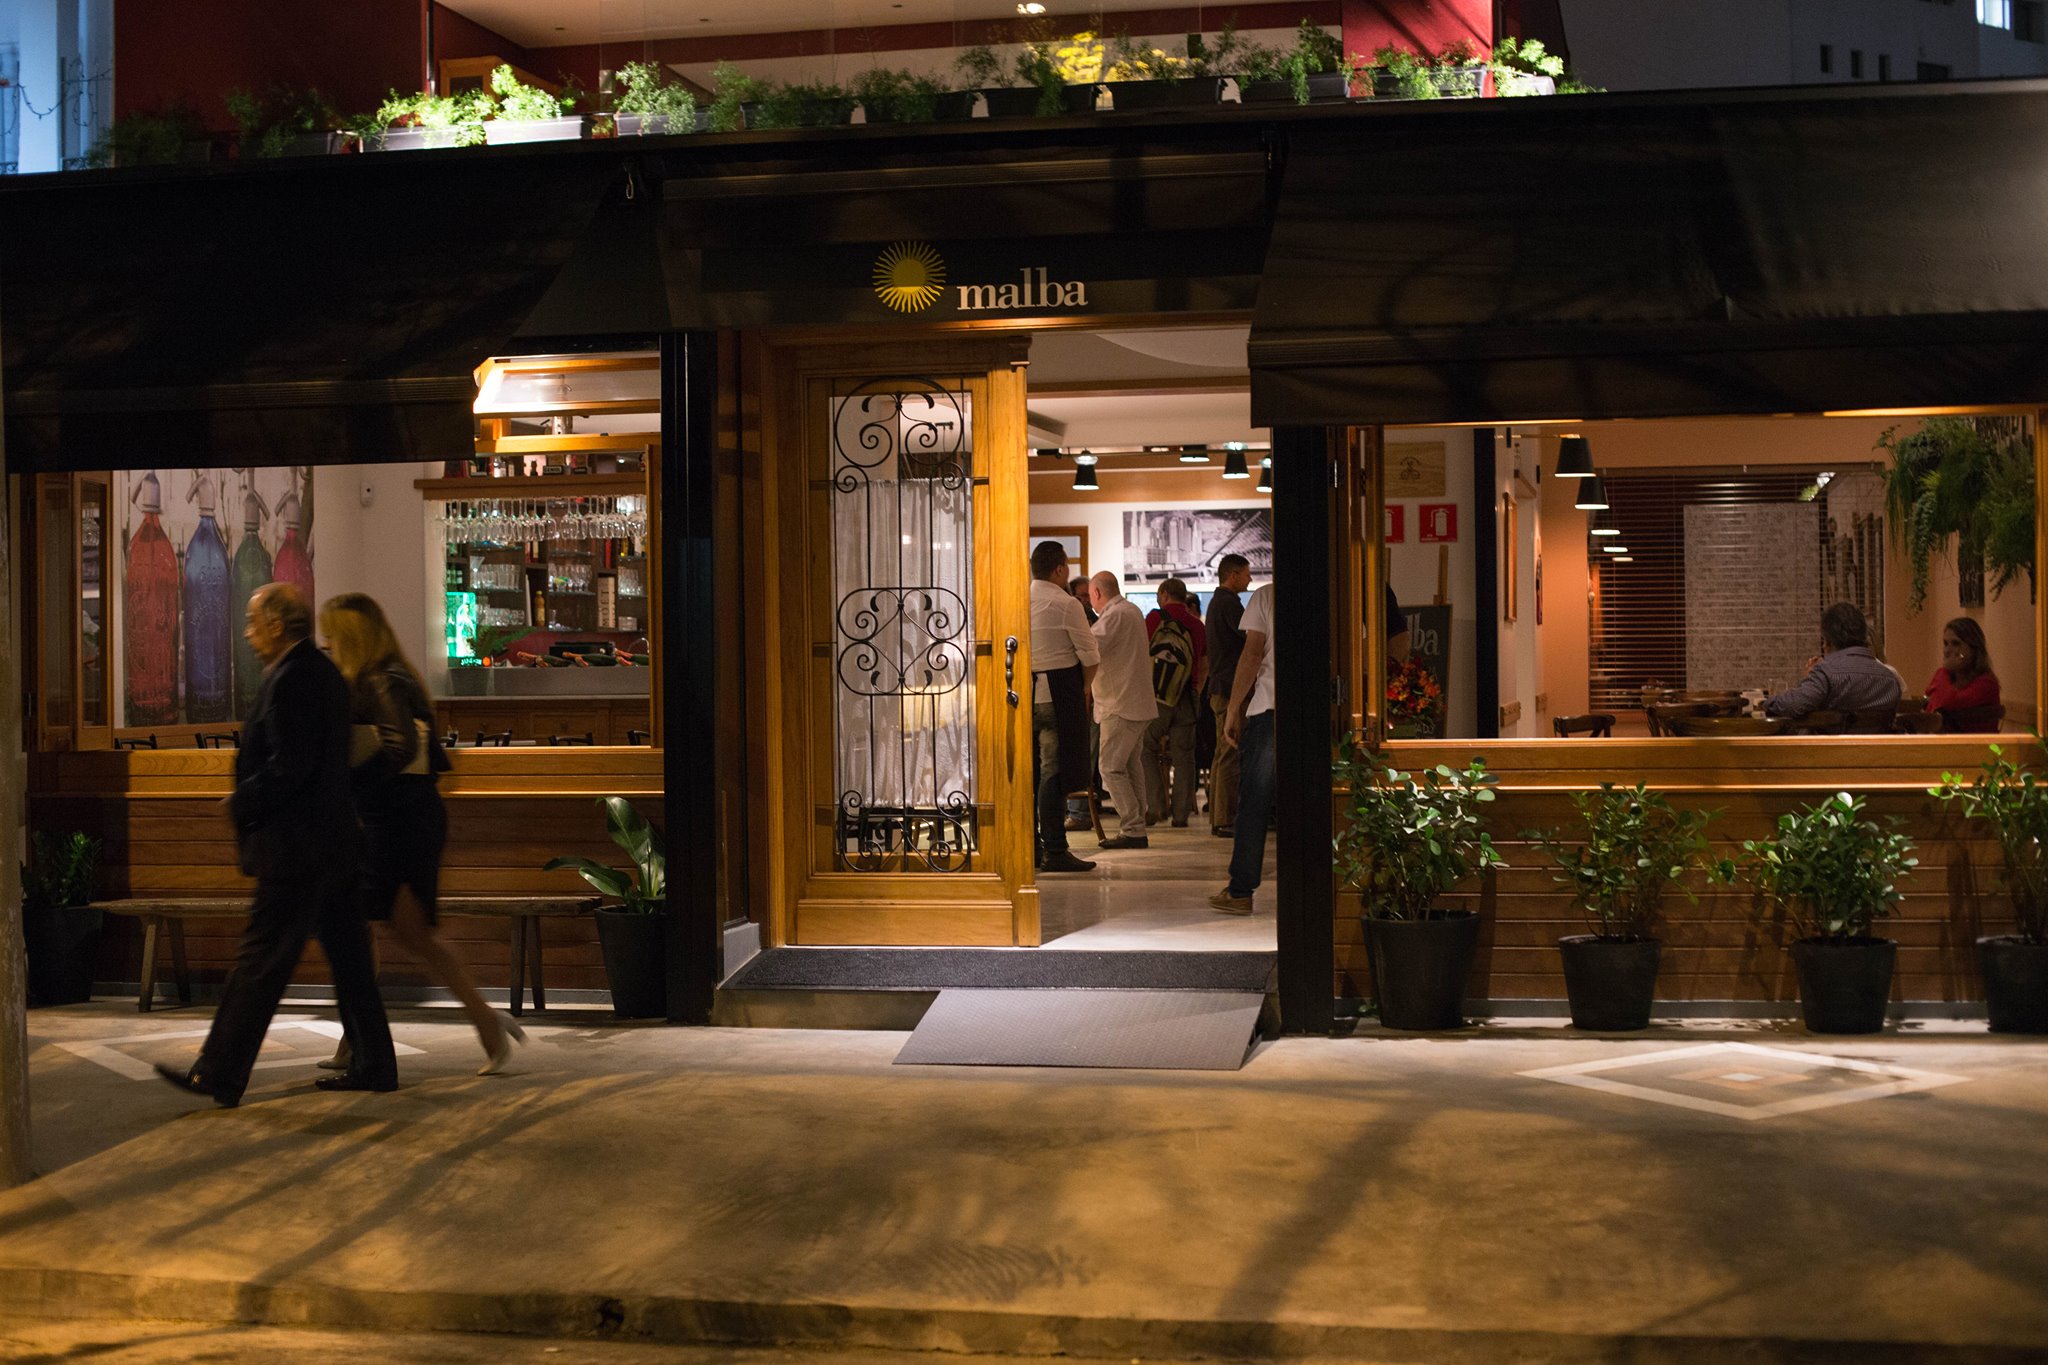 Restaurantes: 18 restaurantes para dar a volta ao mundo sem sair de São Paulo